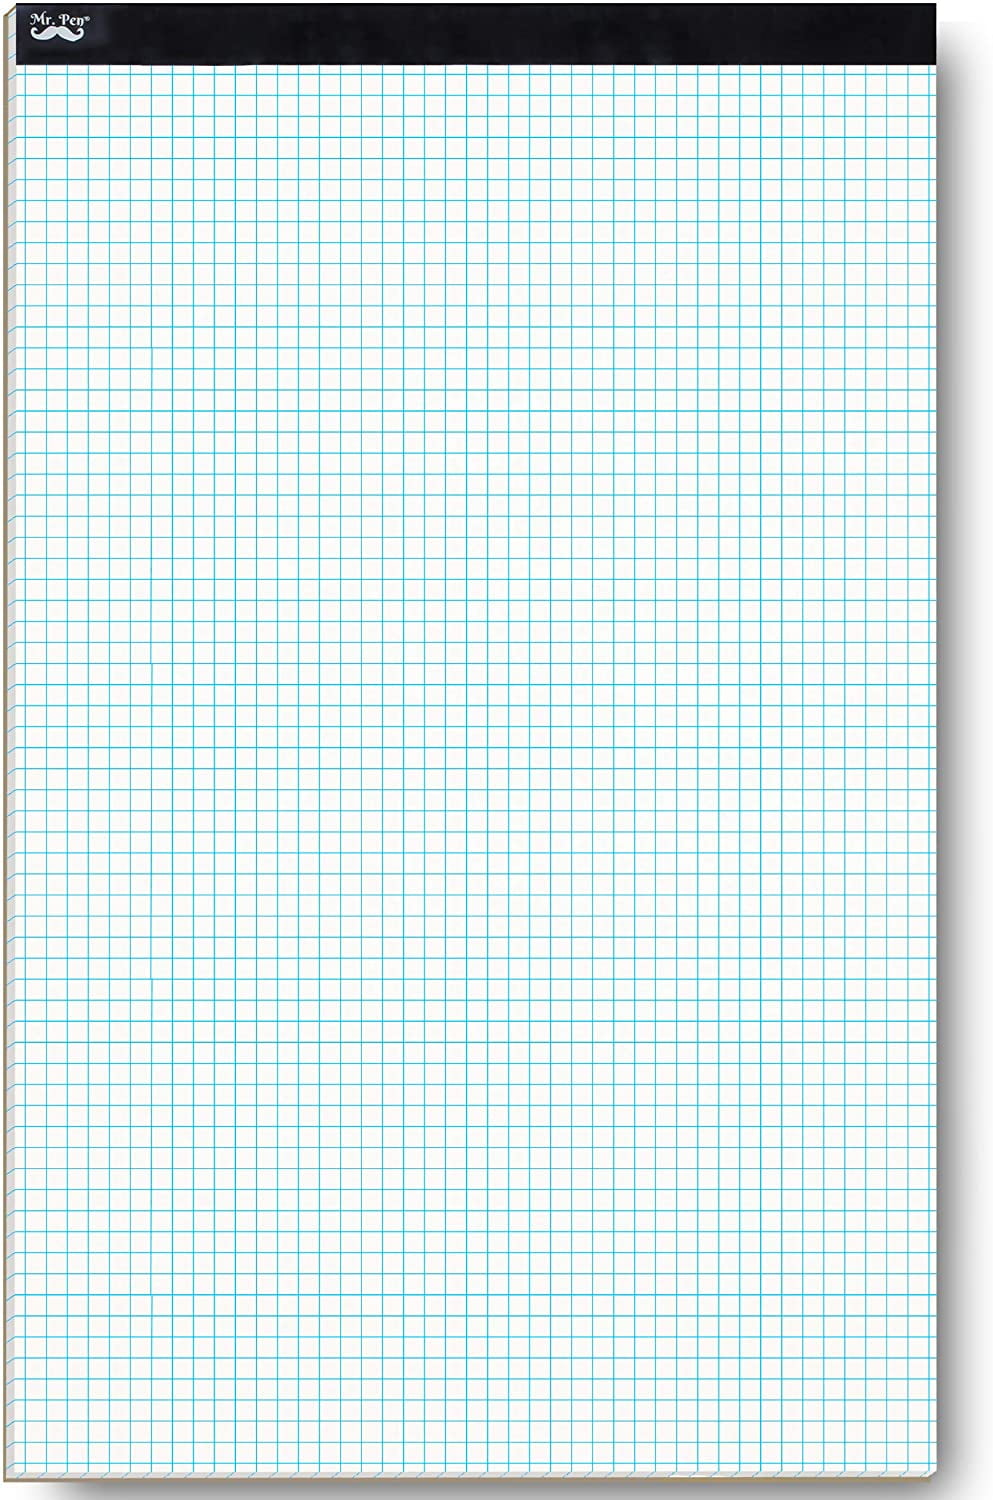 Pen- Graph Paper Square Paper Graph Paper Pad Grid Paper Math Paper 2x2 1/2 Inch Graph Paper Graphing Paper 8.5x11 Math Graph Paper Mr 2 Squares per inch 55 Sheets Grid Paper Pad 